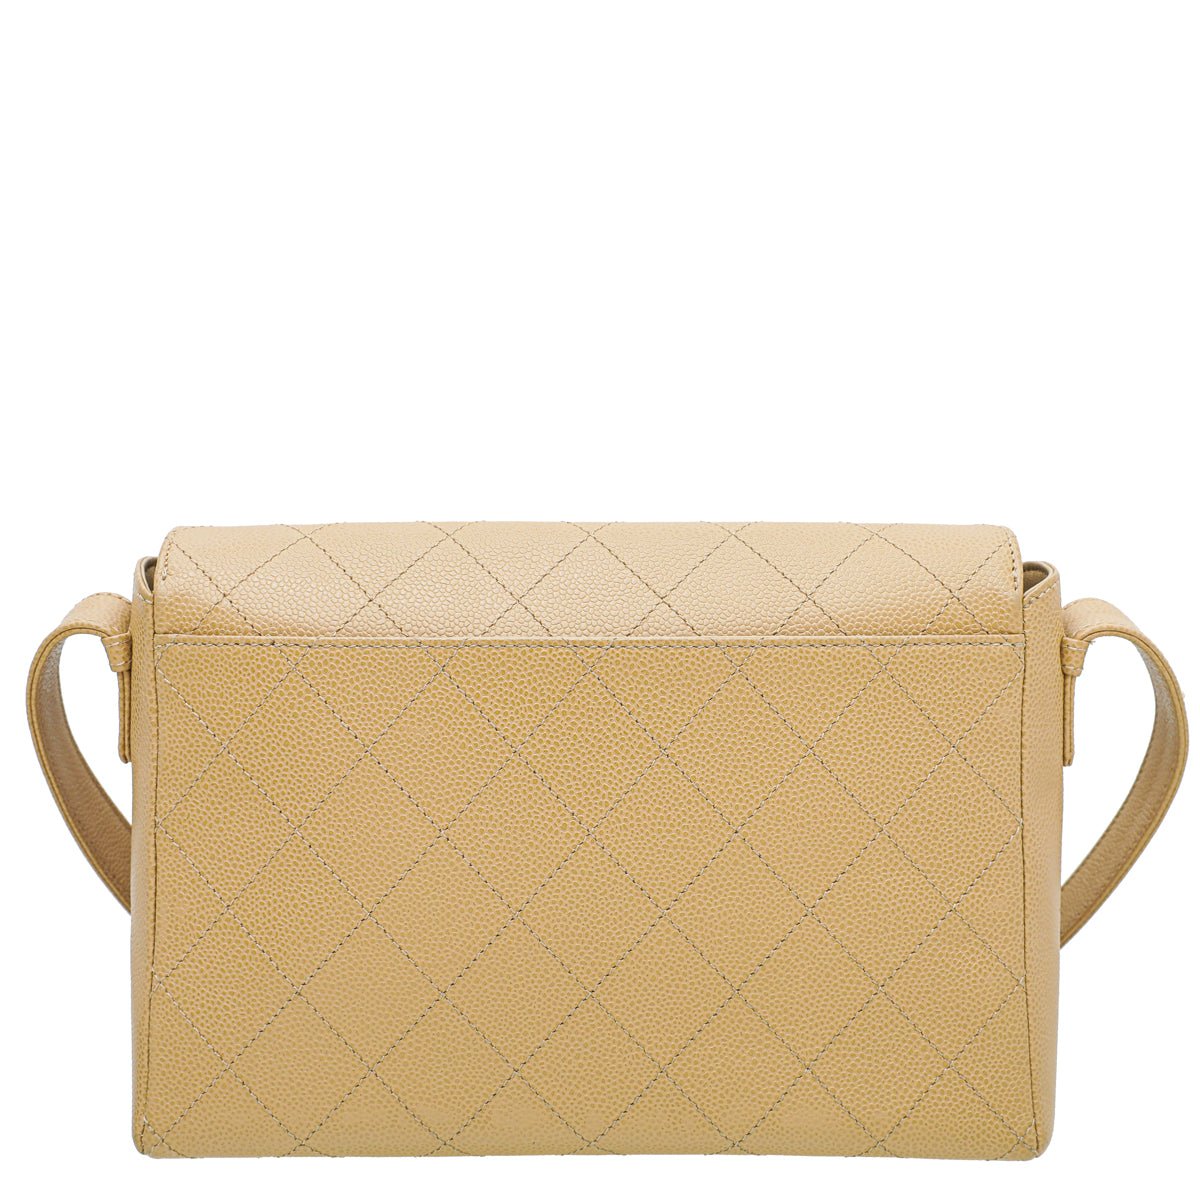 Chanel - Chanel Beige Vintage Shoulder Bag | The Closet